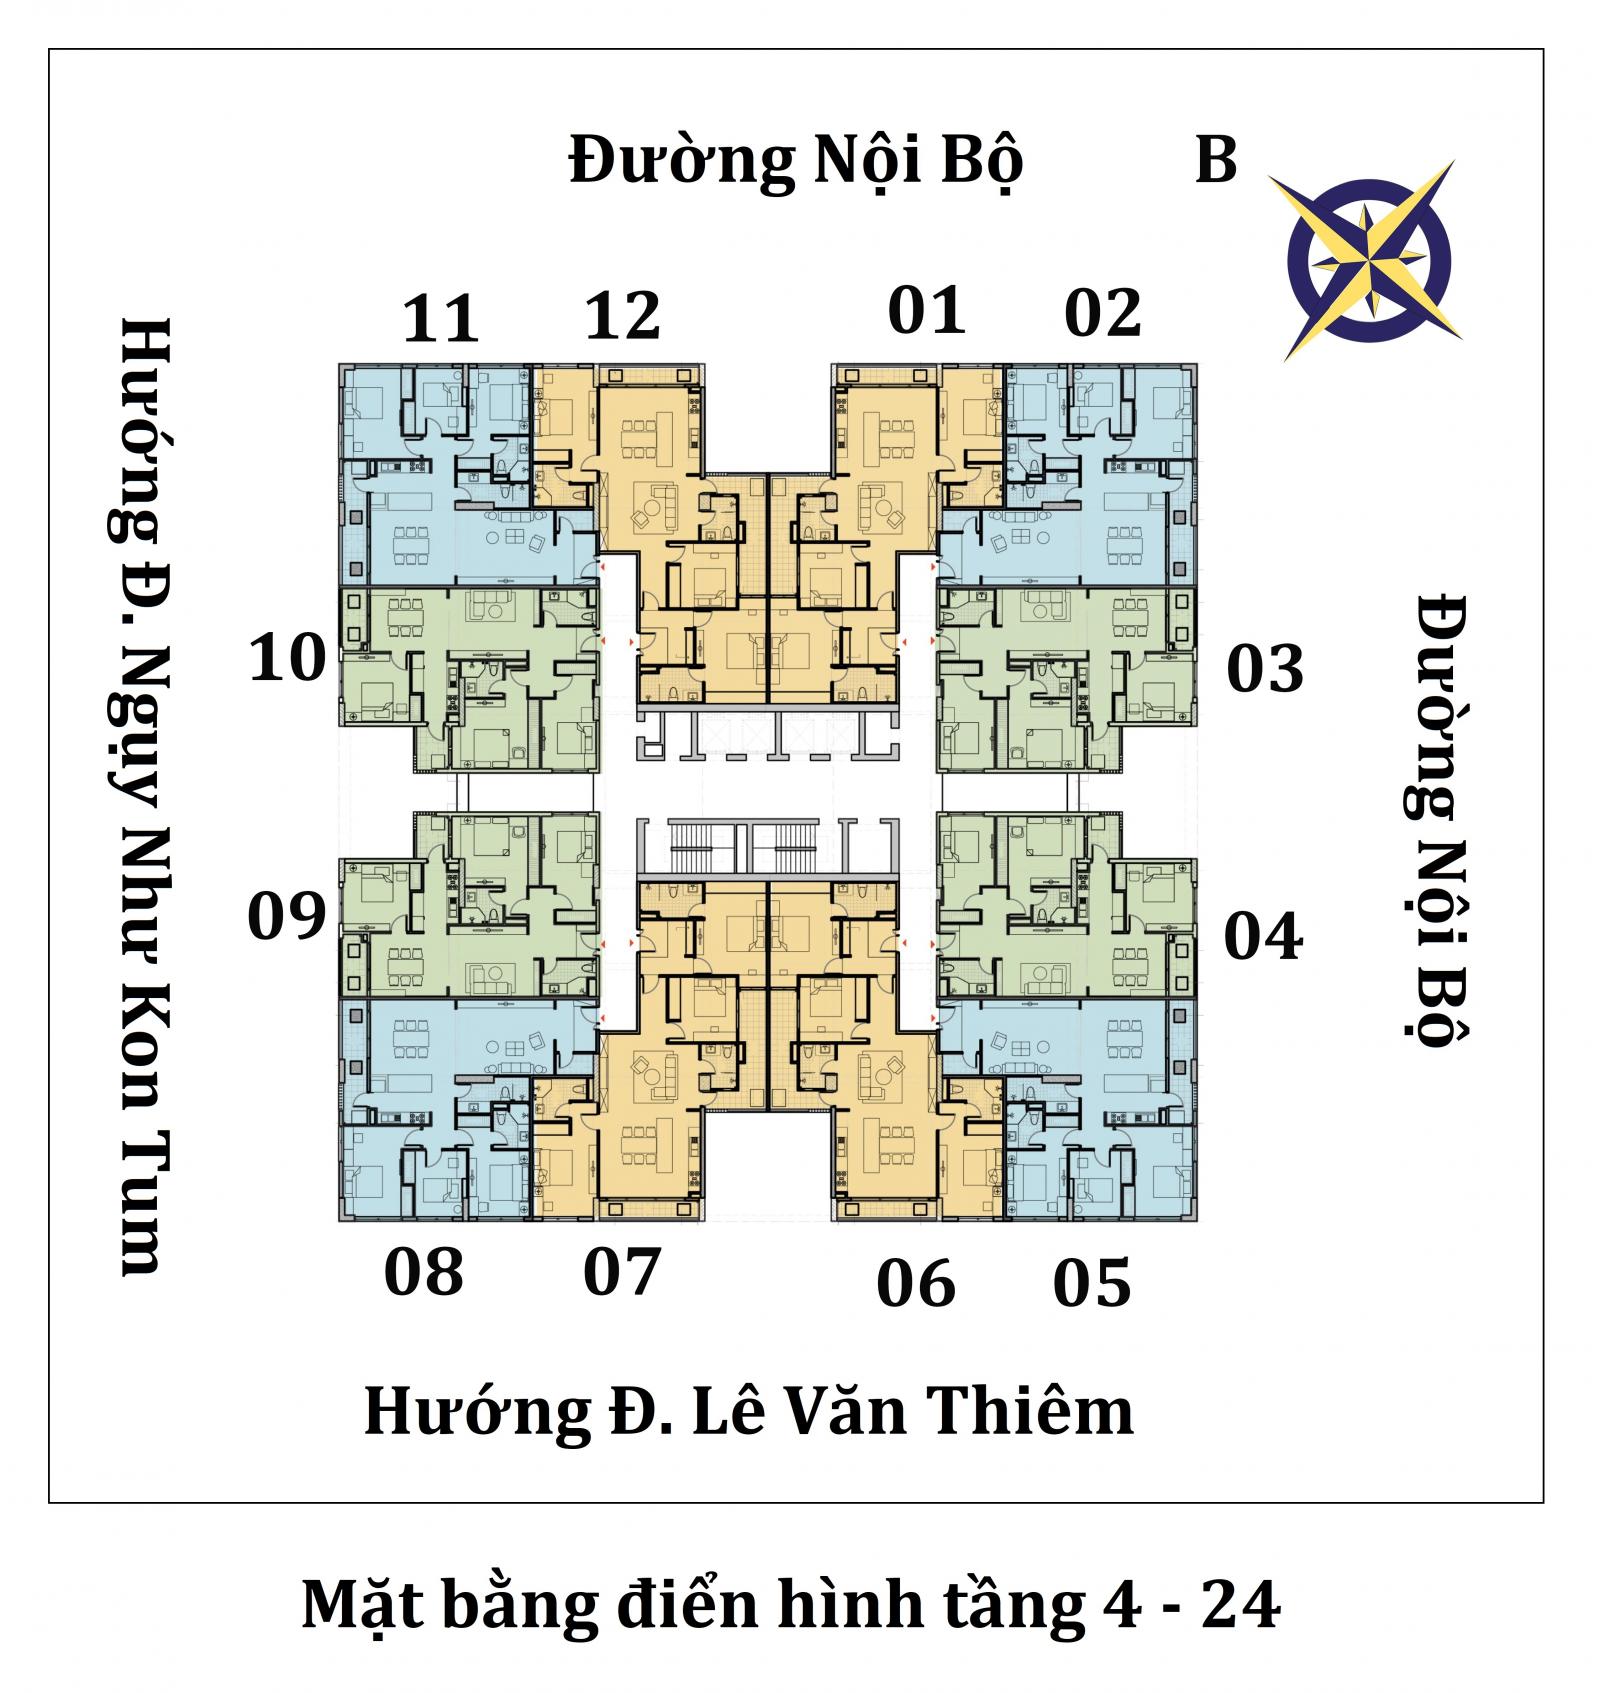 Chung cư The Legacy - Hệ thống thang thoát hiểm cơ Nhật Bản đầu tiên tại Việt Nam. 09488649933 10342195